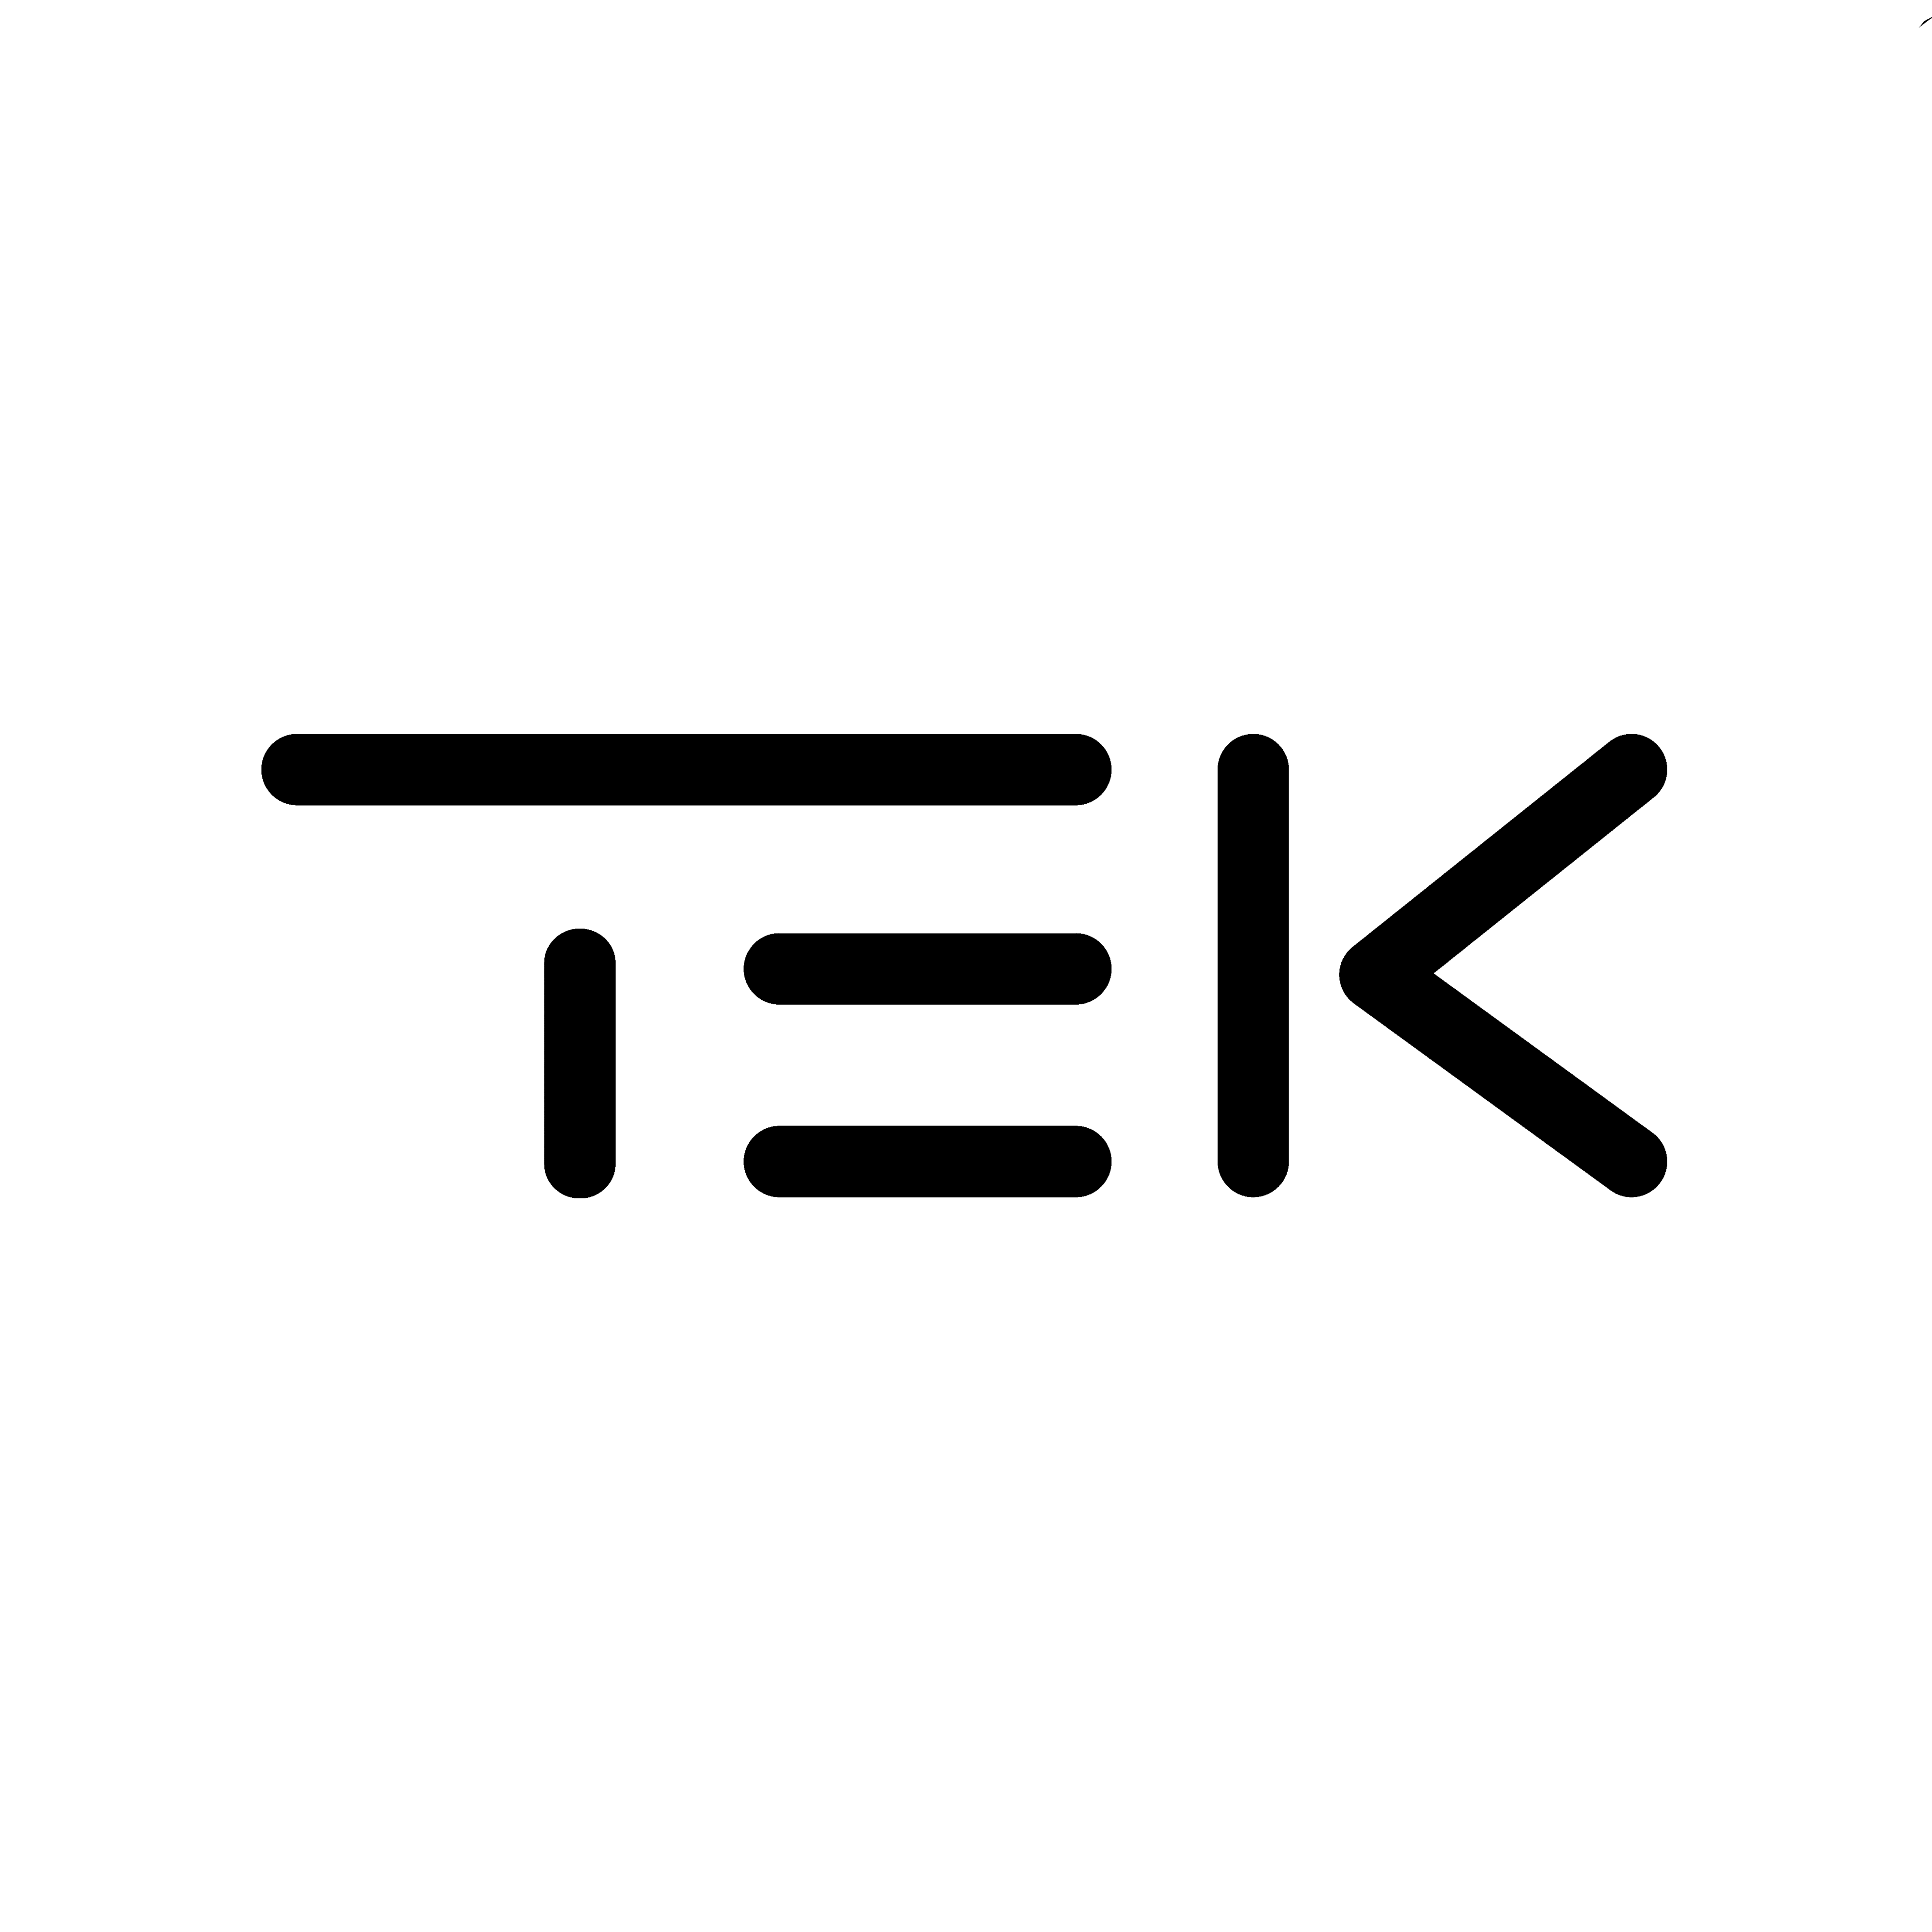 TEK -logo